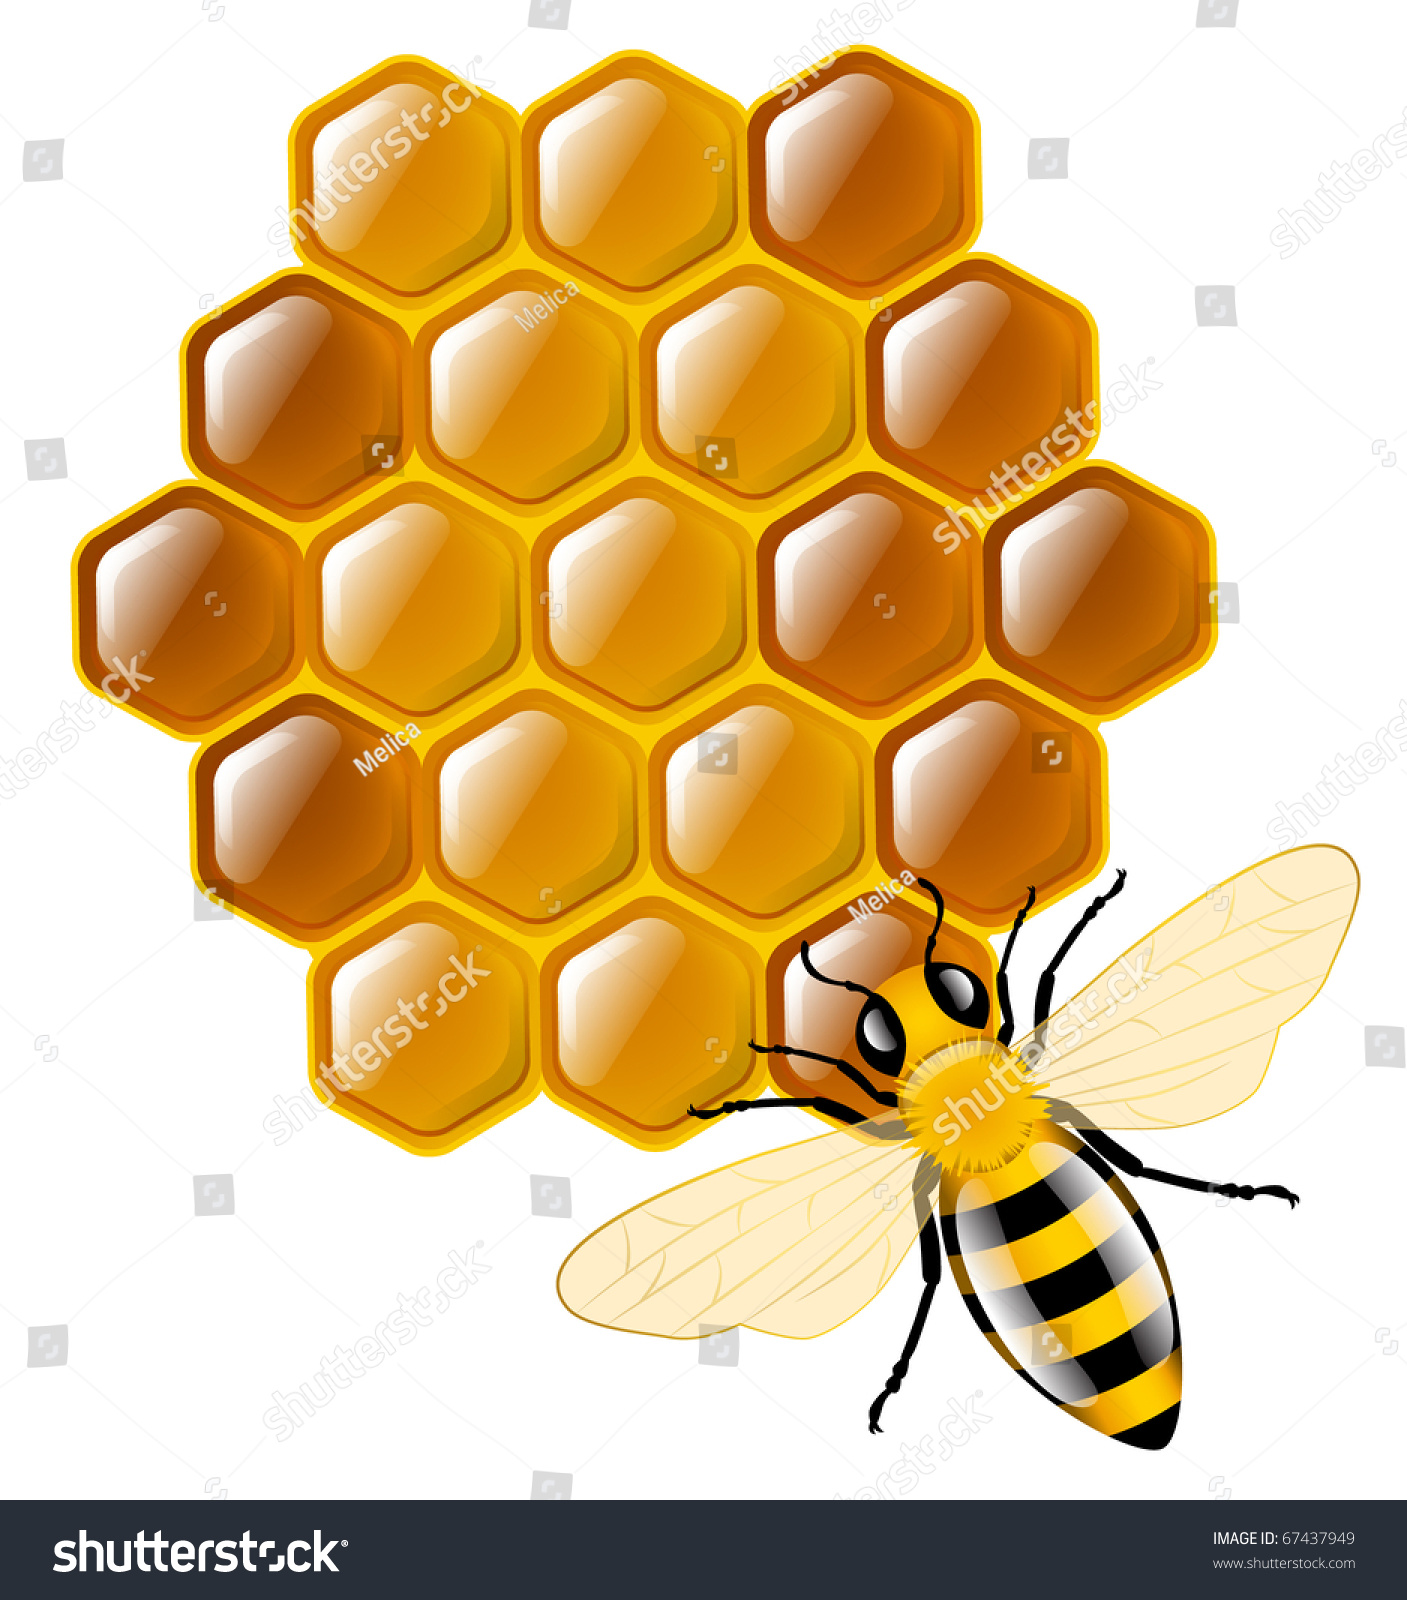 honey bee clipart ai - photo #33